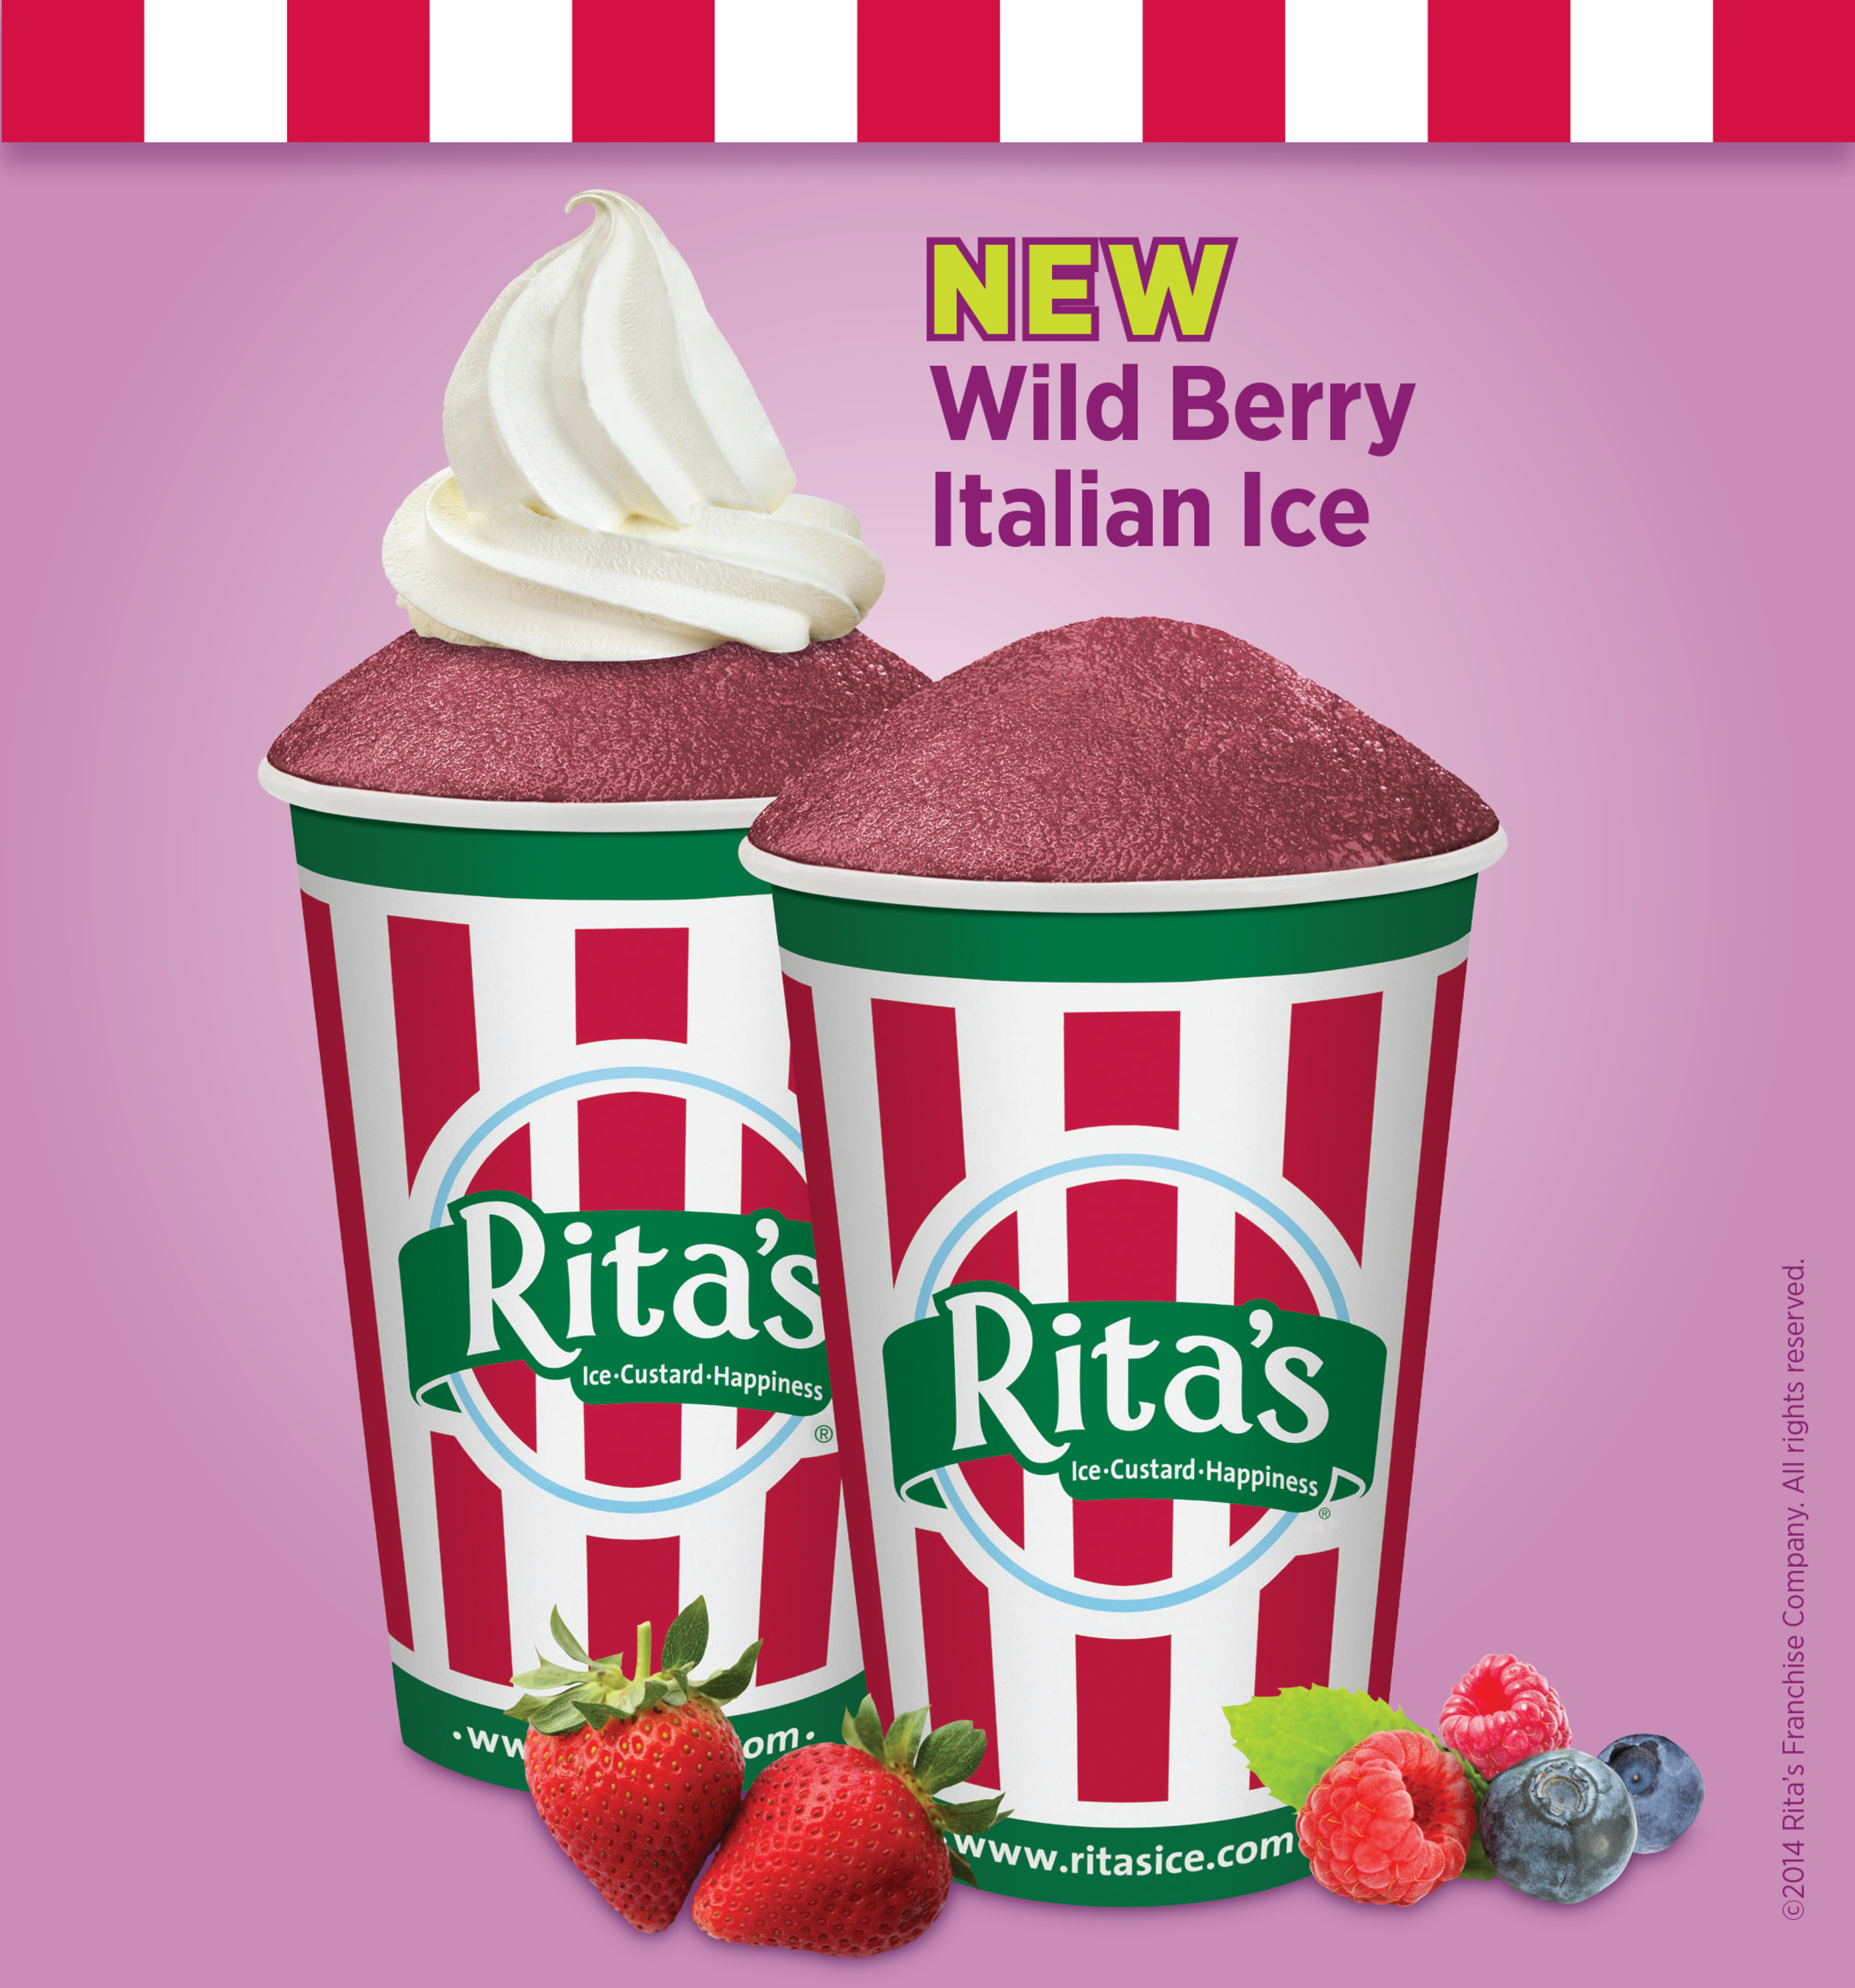 Rita's Italian Ice Celebrates 30 Years With New Wild Berry Italian Ice And "Berry Wild" Birthday Sweepstakes (PRNewsFoto/Rita's Italian Ice)